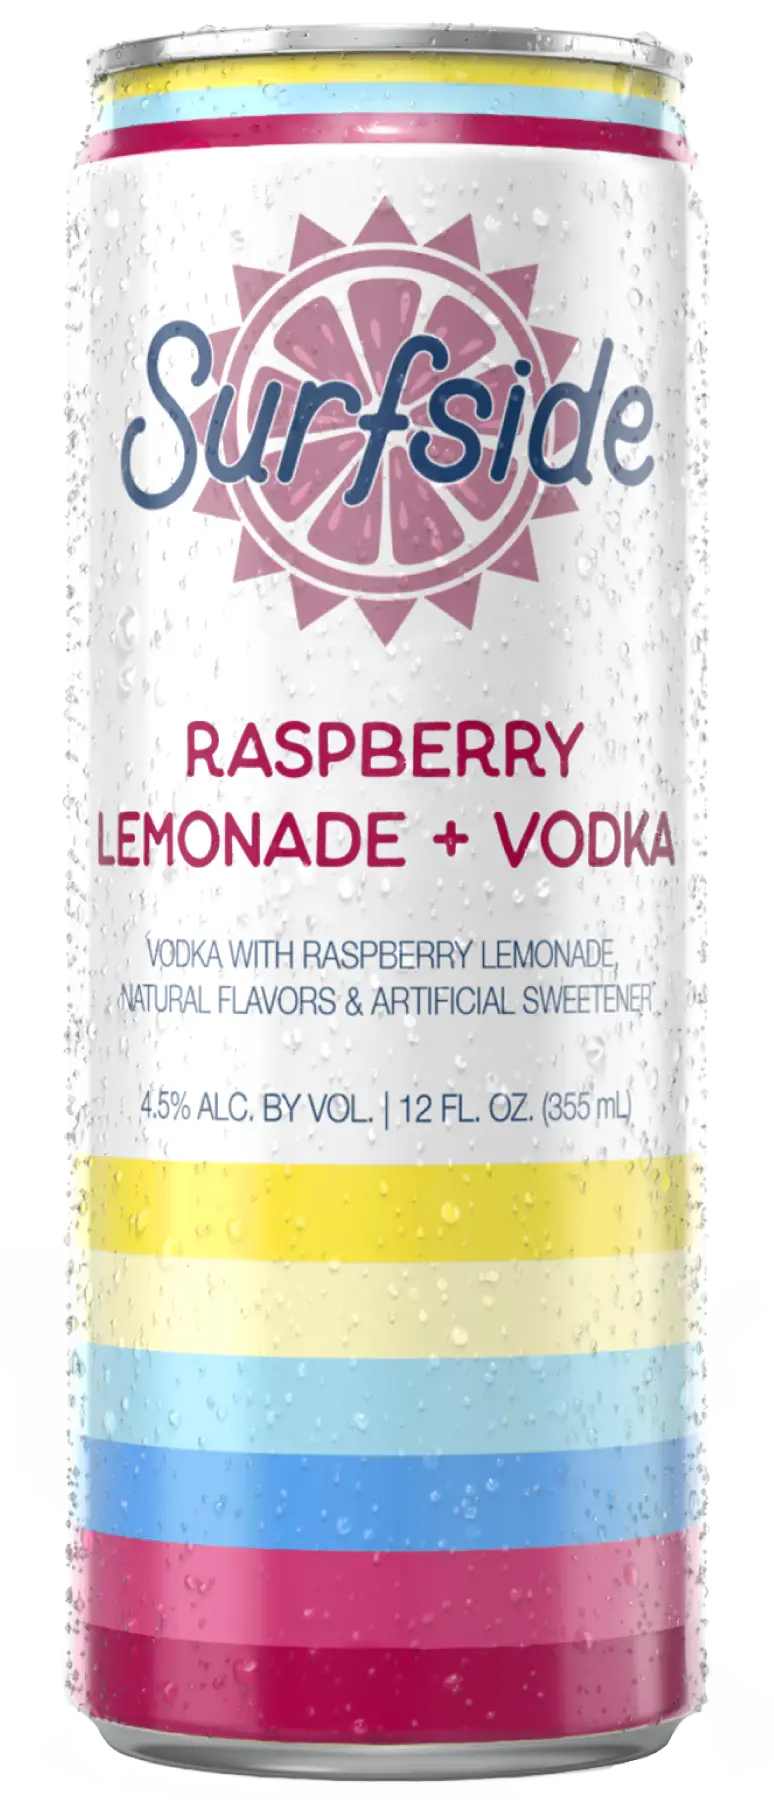 Surfside Raspberry Lemonade + Vodka